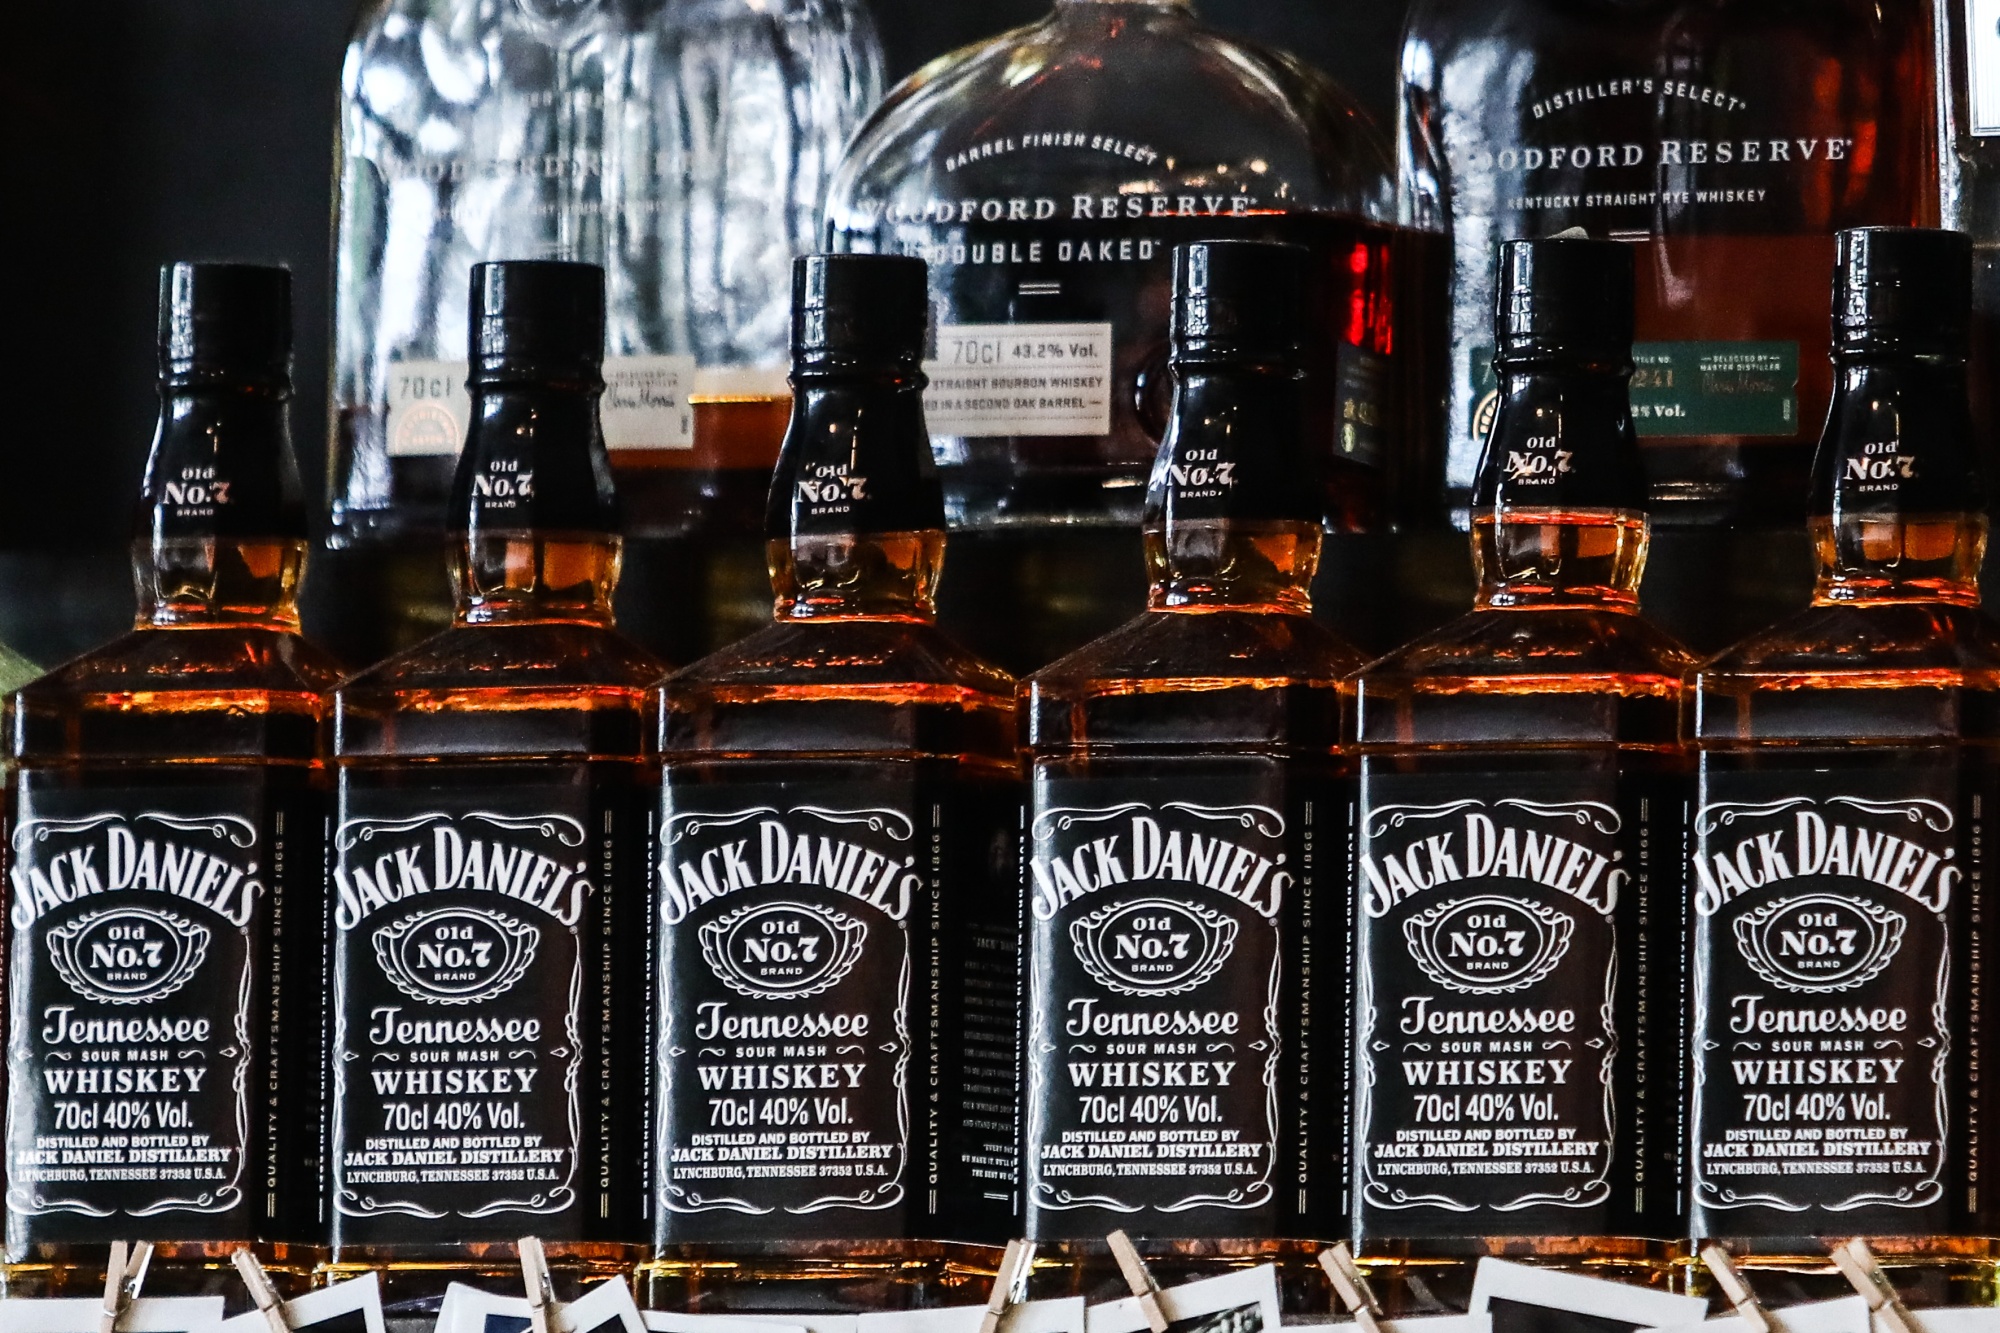 Jack Daniel’s whiskey bottles.